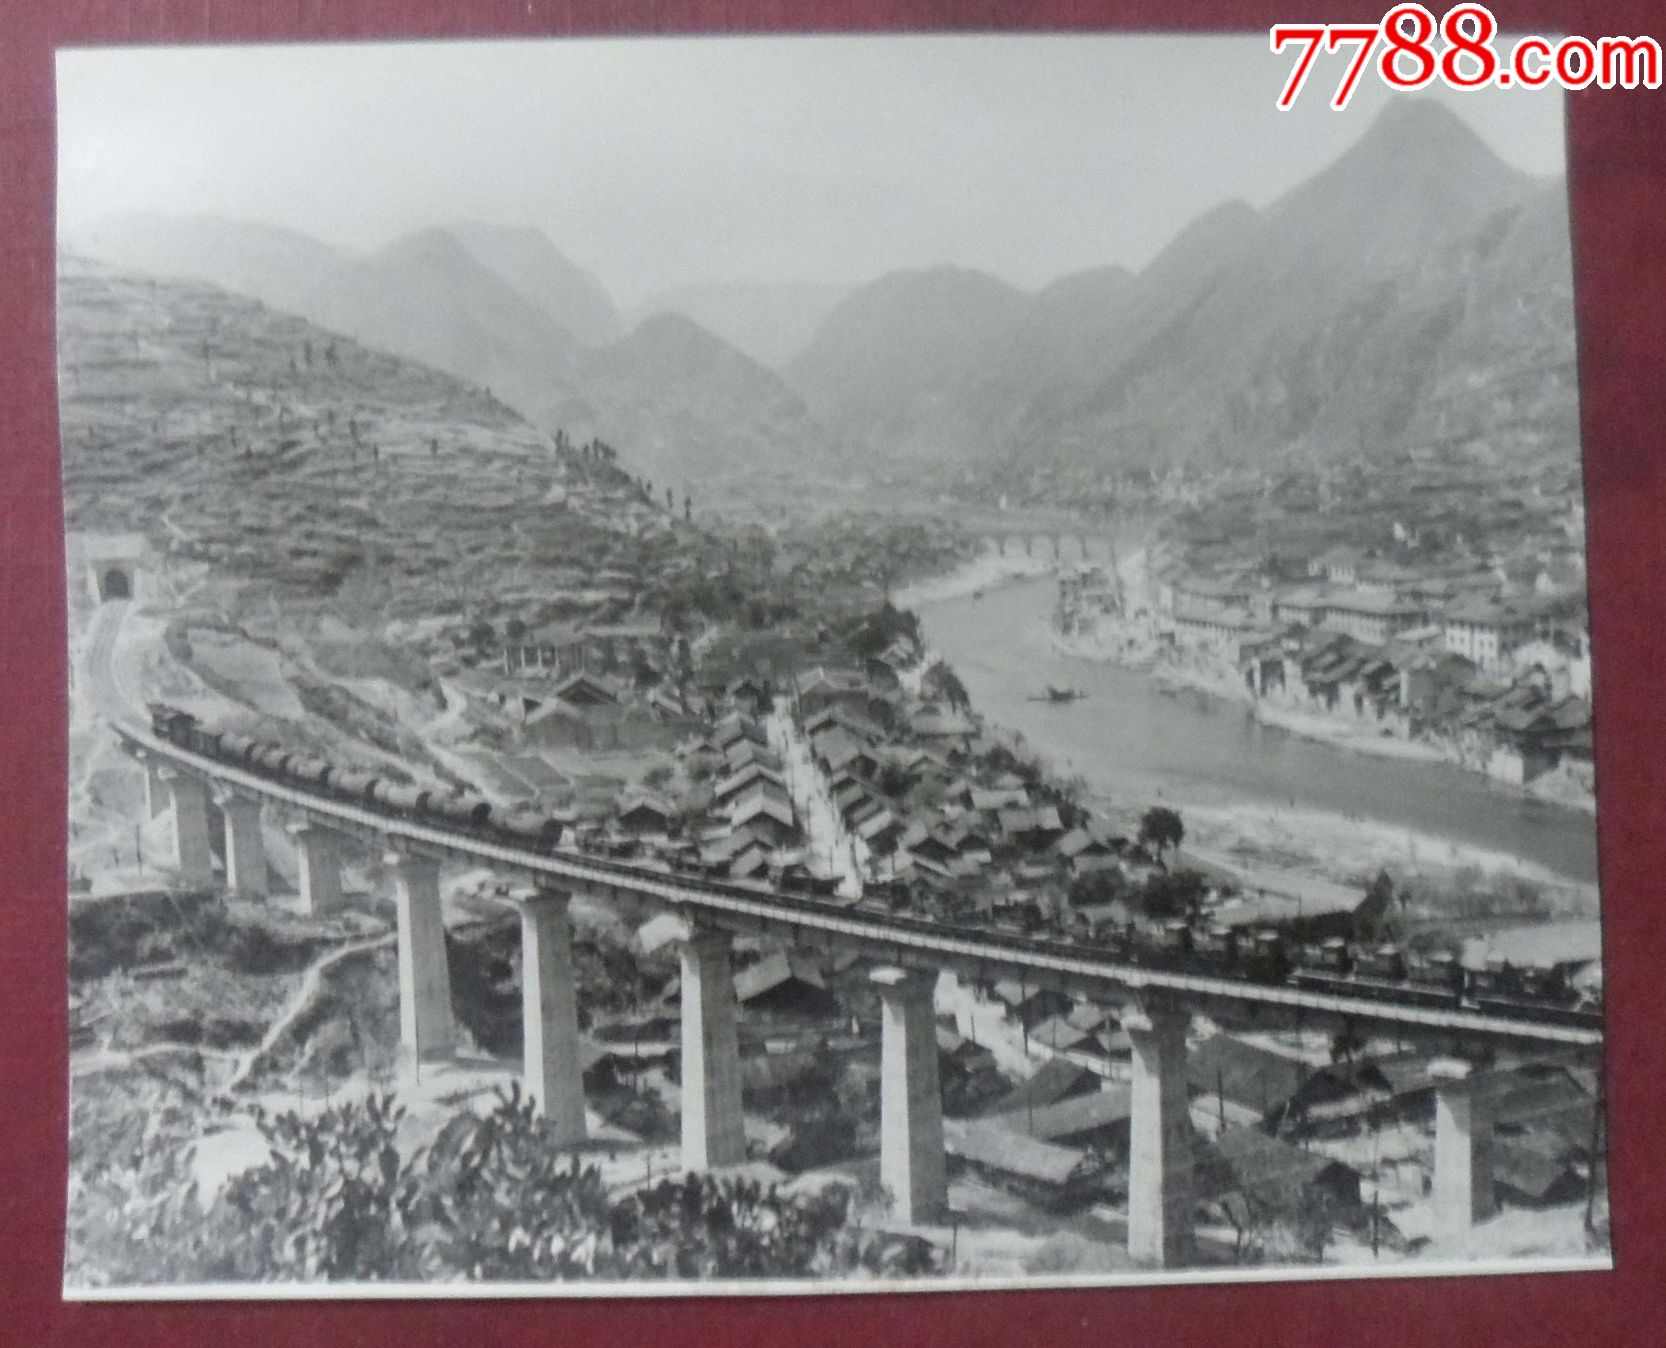 七十年代,贵州镇远县城,湘黔铁路贯穿而过